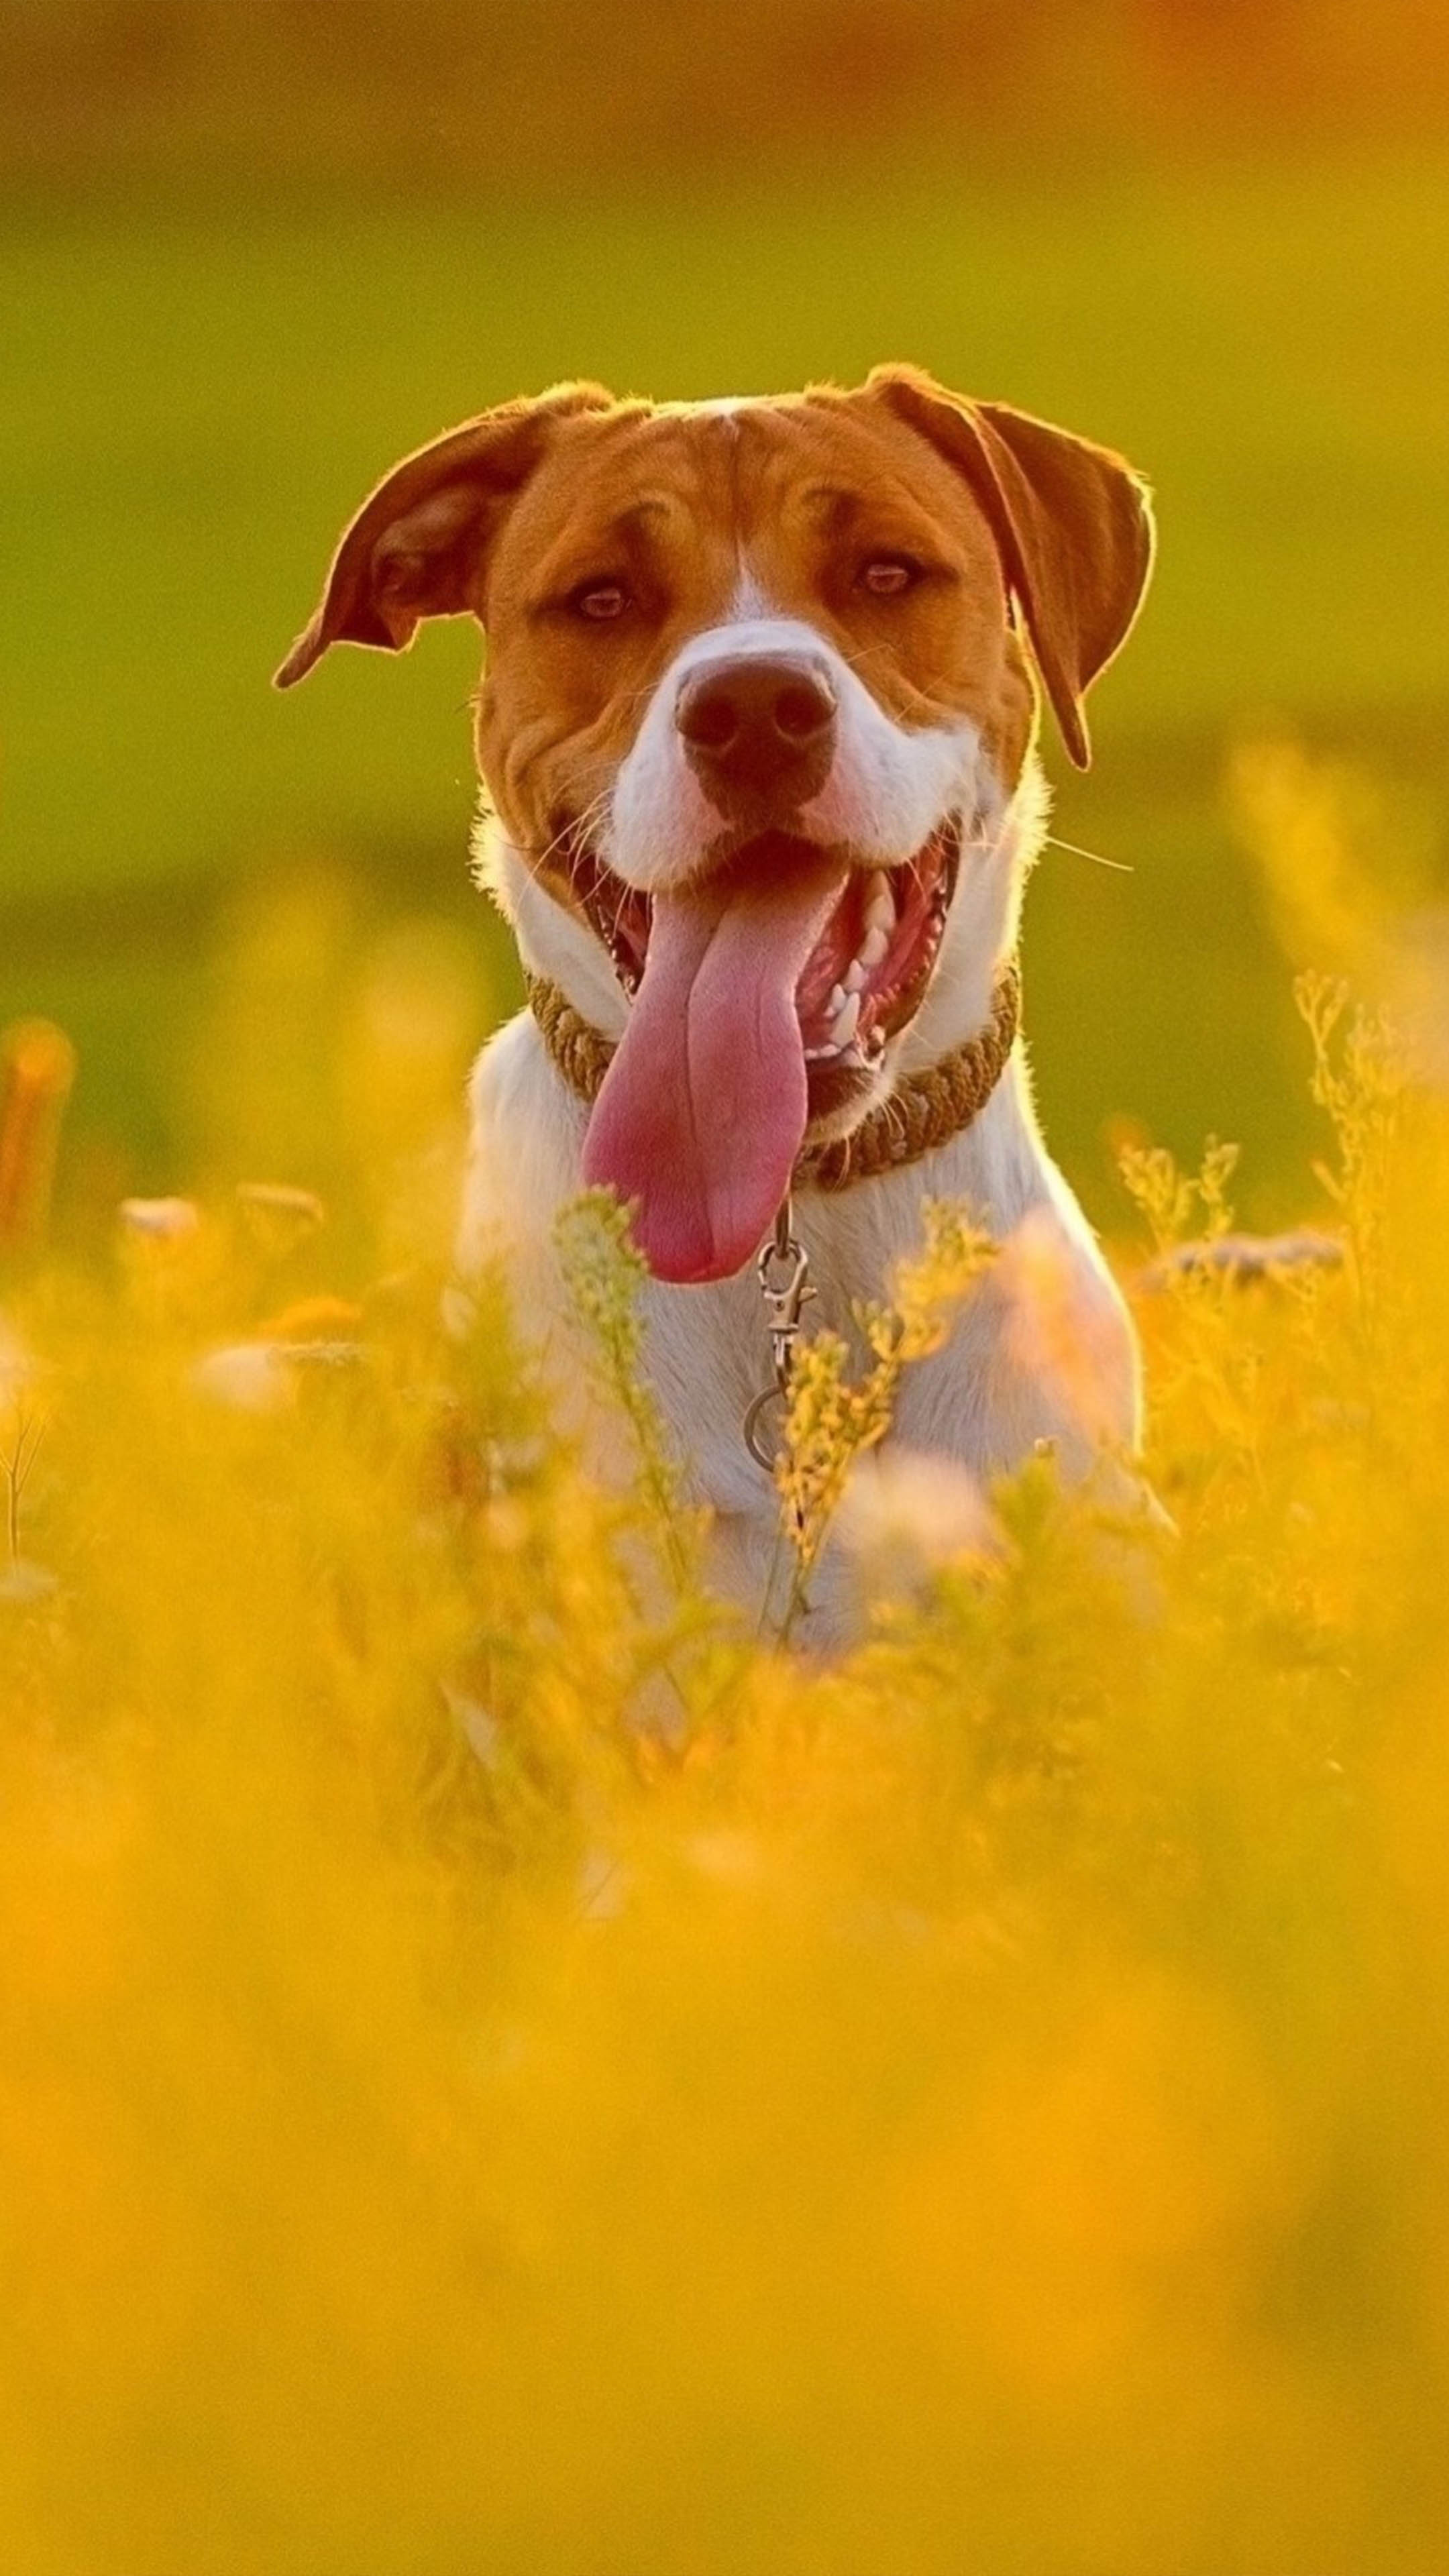 Dog In Yellow Flower Field 4K Ultra HD Mobile Wallpaper